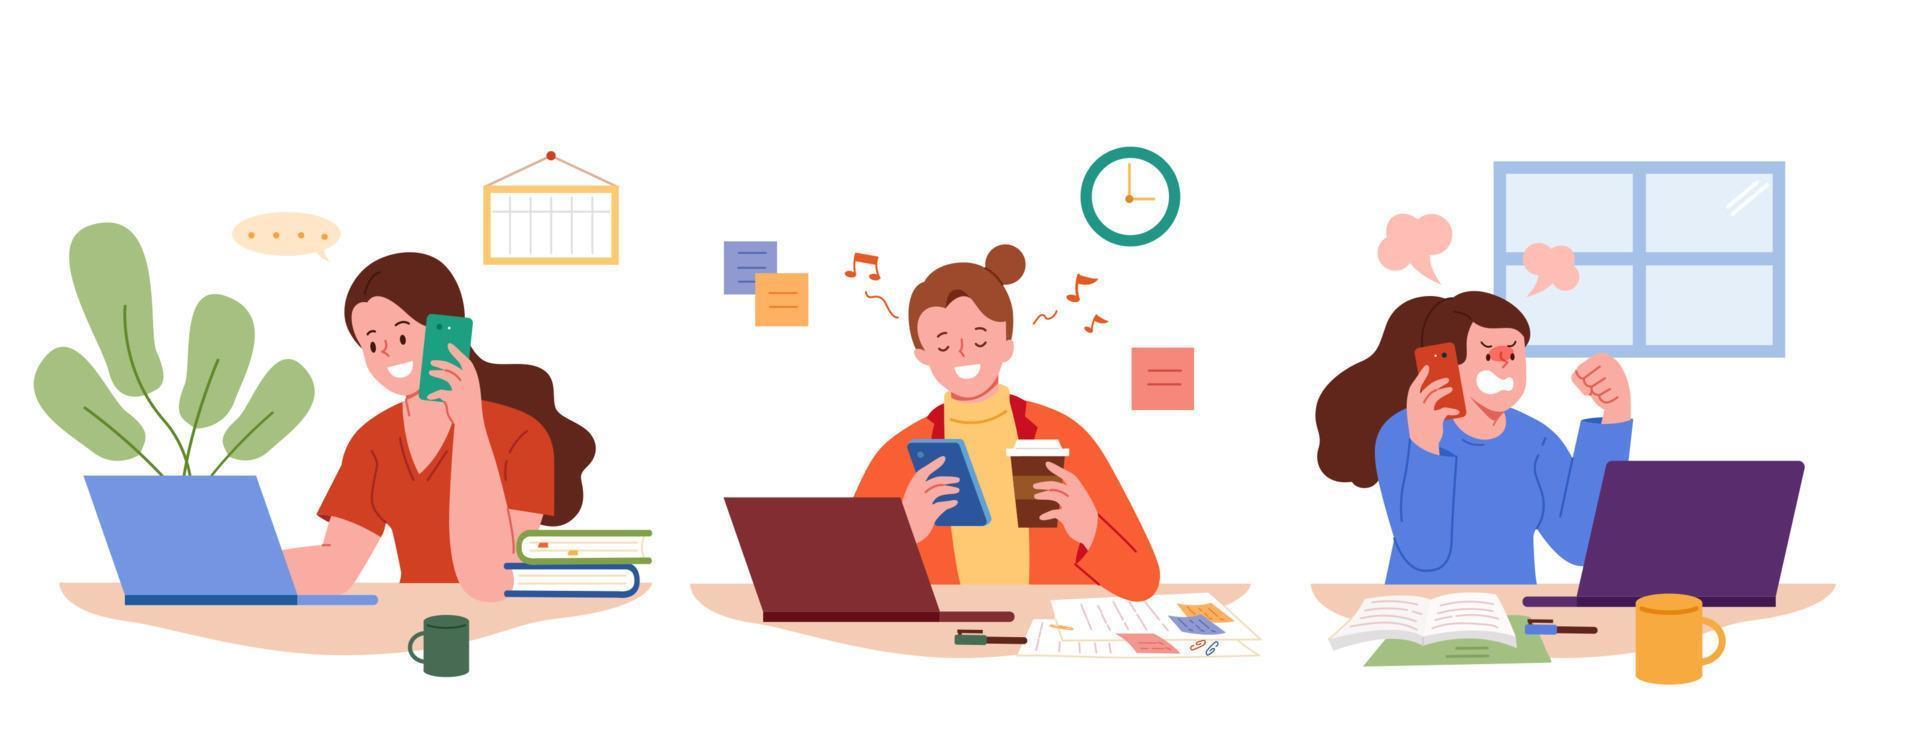 conjunto de empleadas que trabajan en el escritorio de la oficina usando teléfonos móviles. ilustración plana de mujeres con diferentes expresiones en el lugar de trabajo mientras trabajan en el cargo. vector